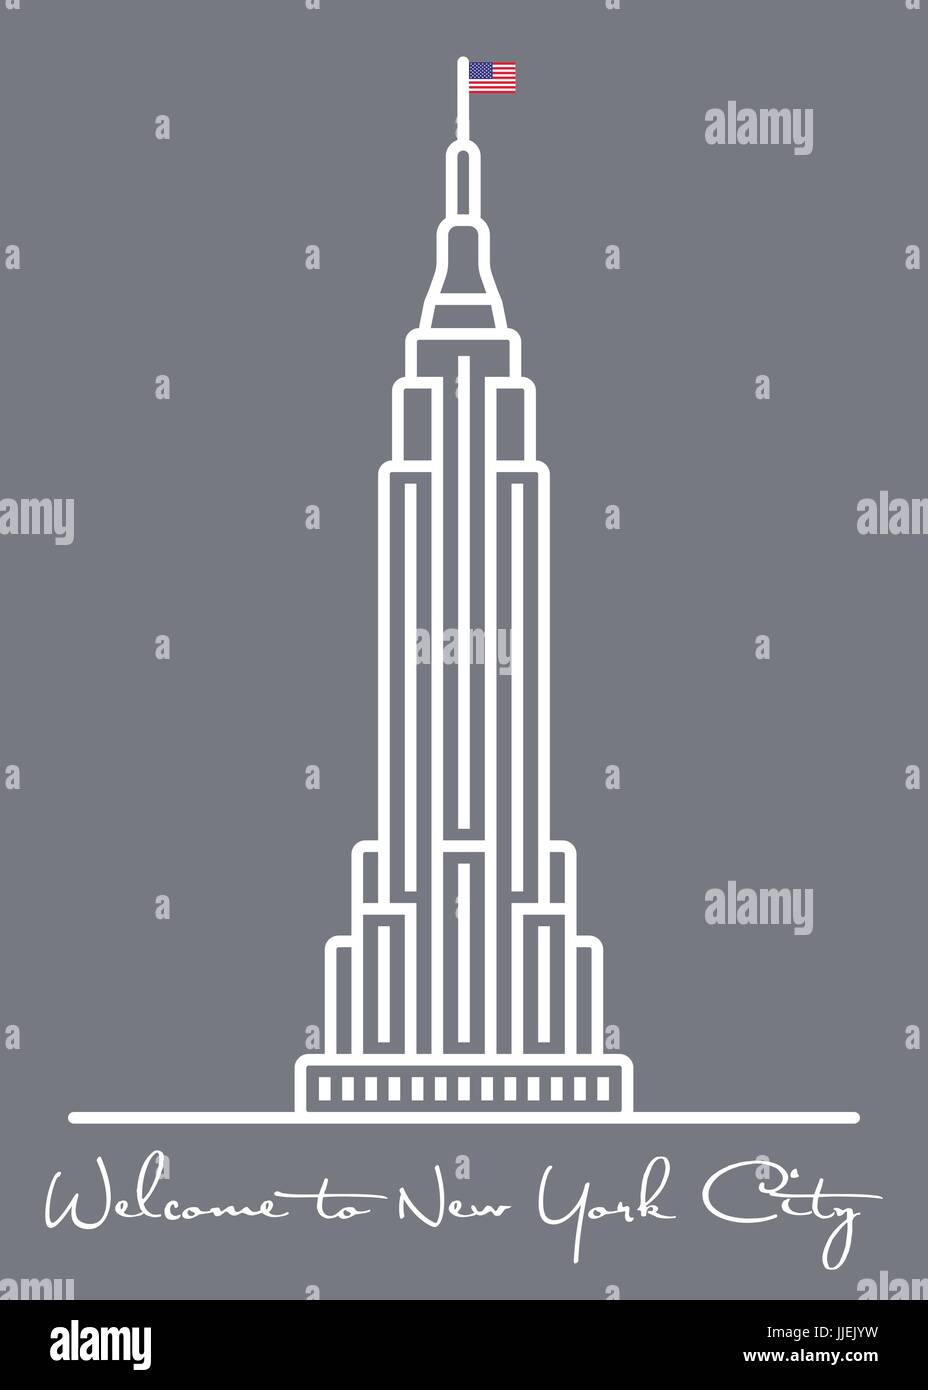 Bienvenue à New York City carte de souhaits avec l'icône de la ligne de gratte-ciel vector illustration Illustration de Vecteur